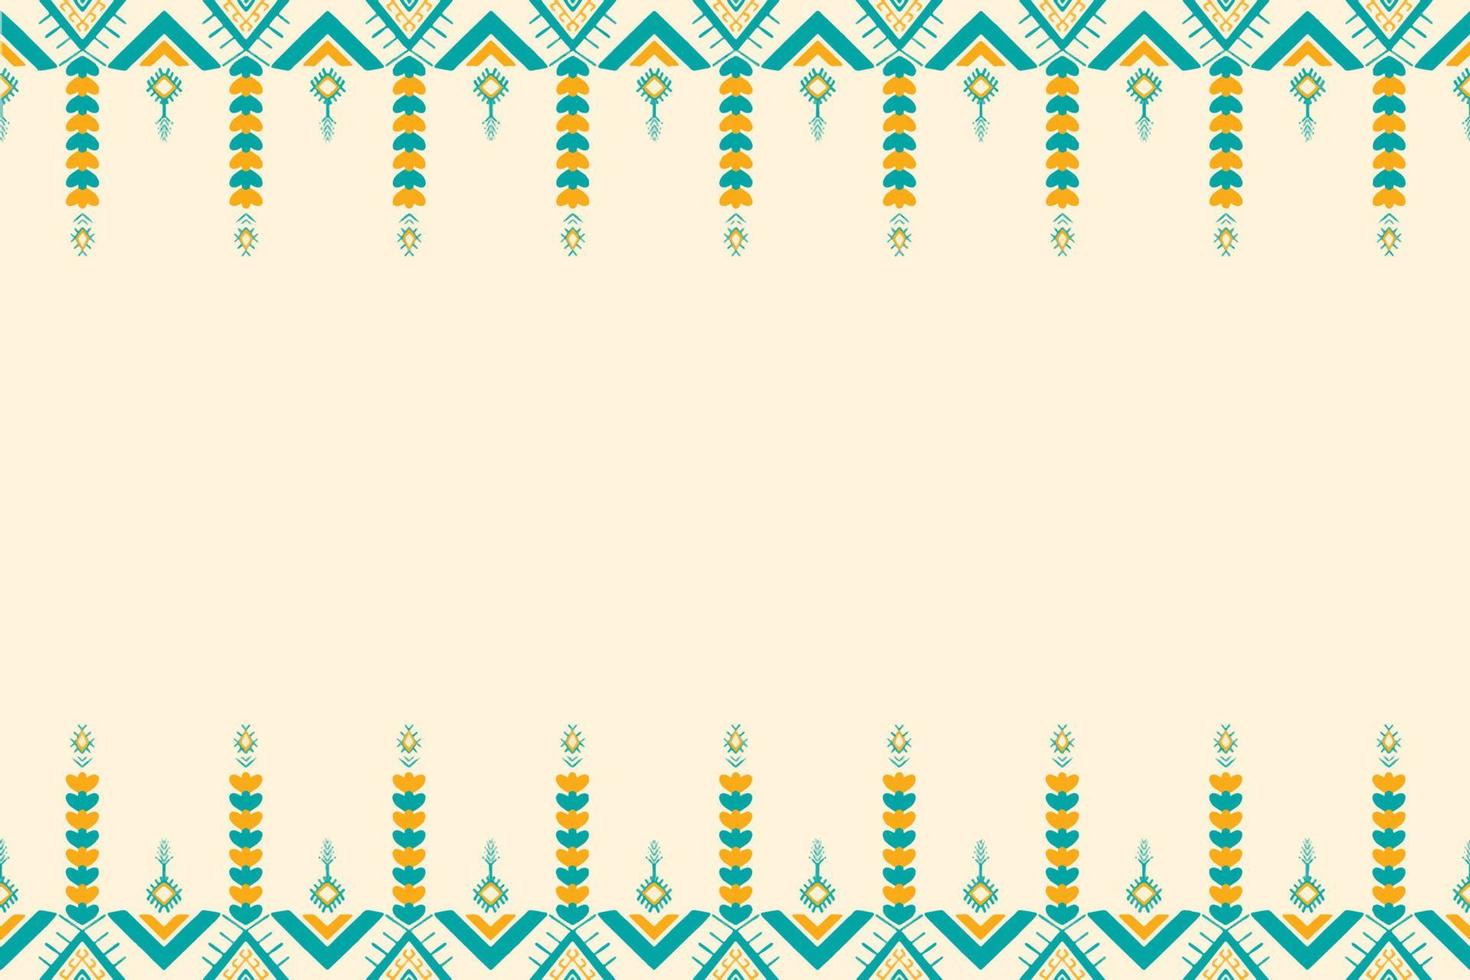 verde azulado amarillo y verde sobre marfil. patrón geométrico étnico oriental diseño tradicional para fondo, alfombra, papel pintado, ropa, envoltura, batik, tela, estilo de bordado de ilustración vectorial vector